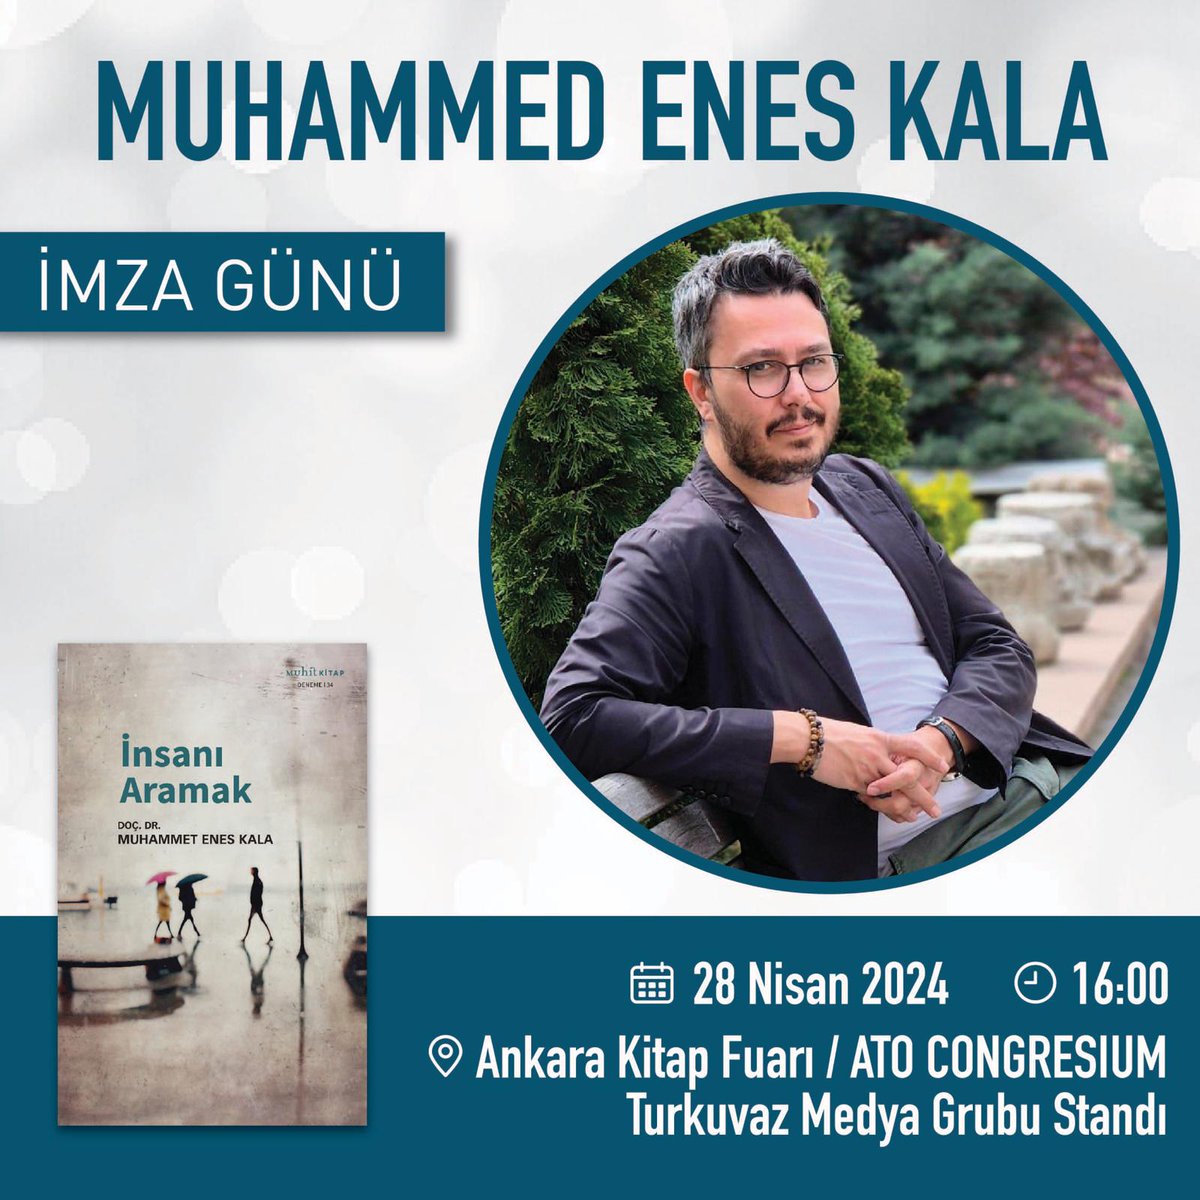 Yazarımız Muhammet Enes Kala, 28 Nisan Pazar günü Ankara Kitap Fuarı'nda okurlarıyla buluşacak. İmza günümüze tüm okurlarımızı bekleriz.